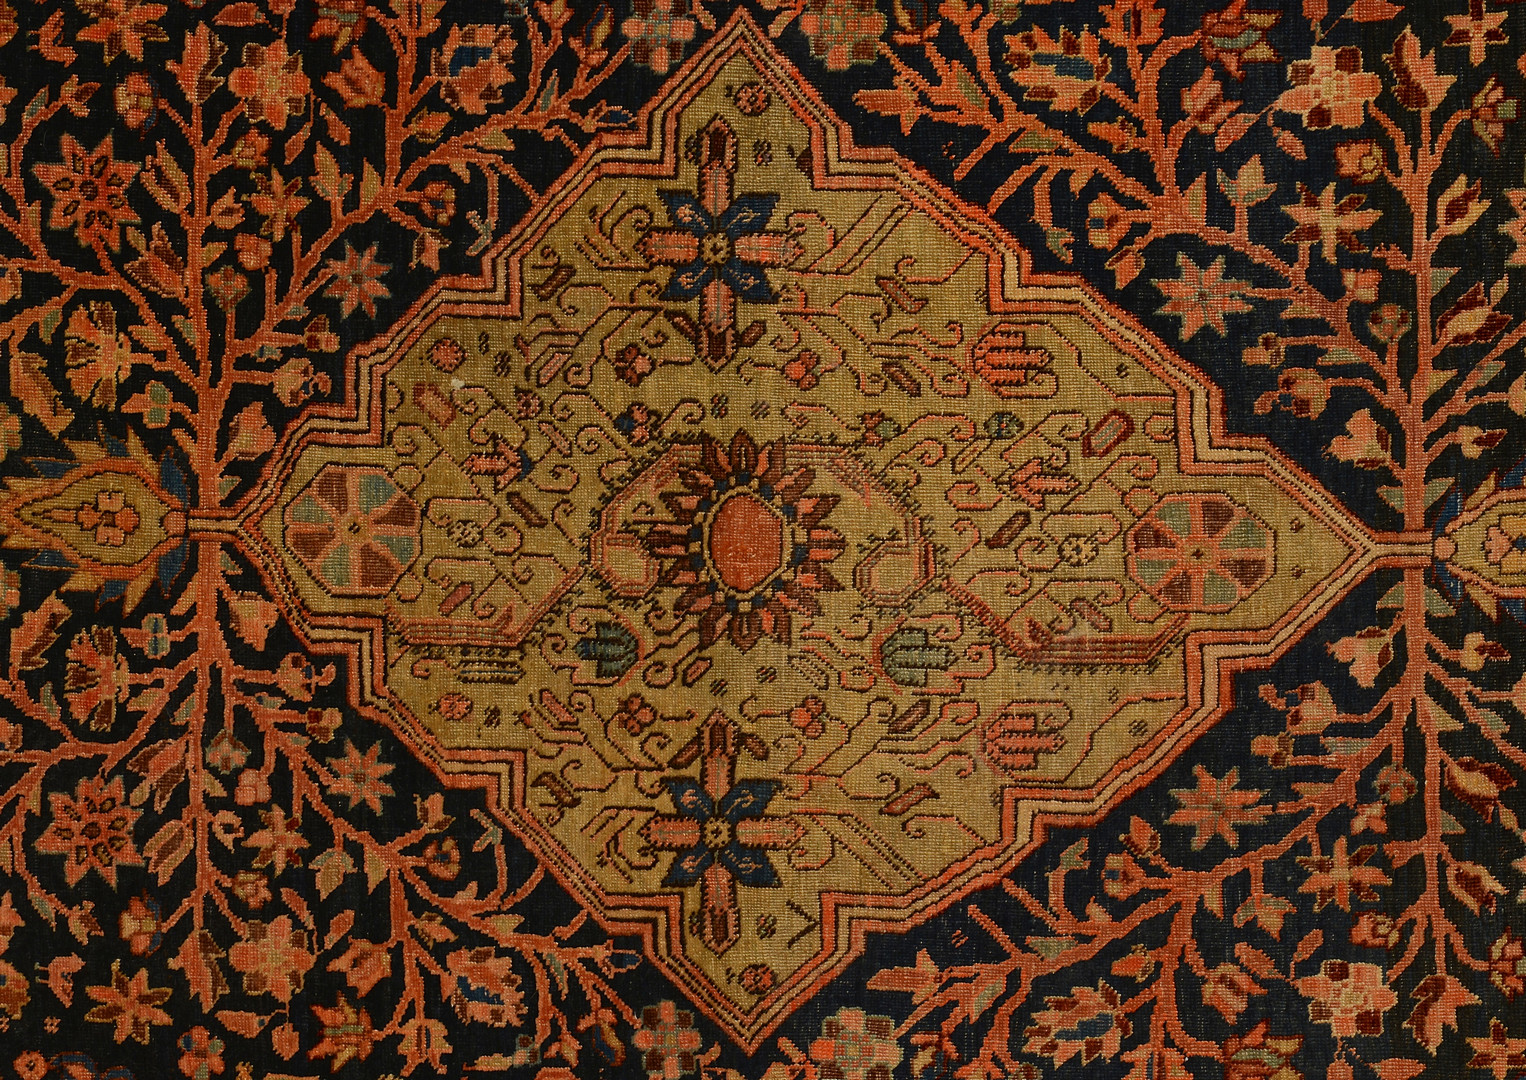 Lot 312: Antique Farahan Sarouk rug